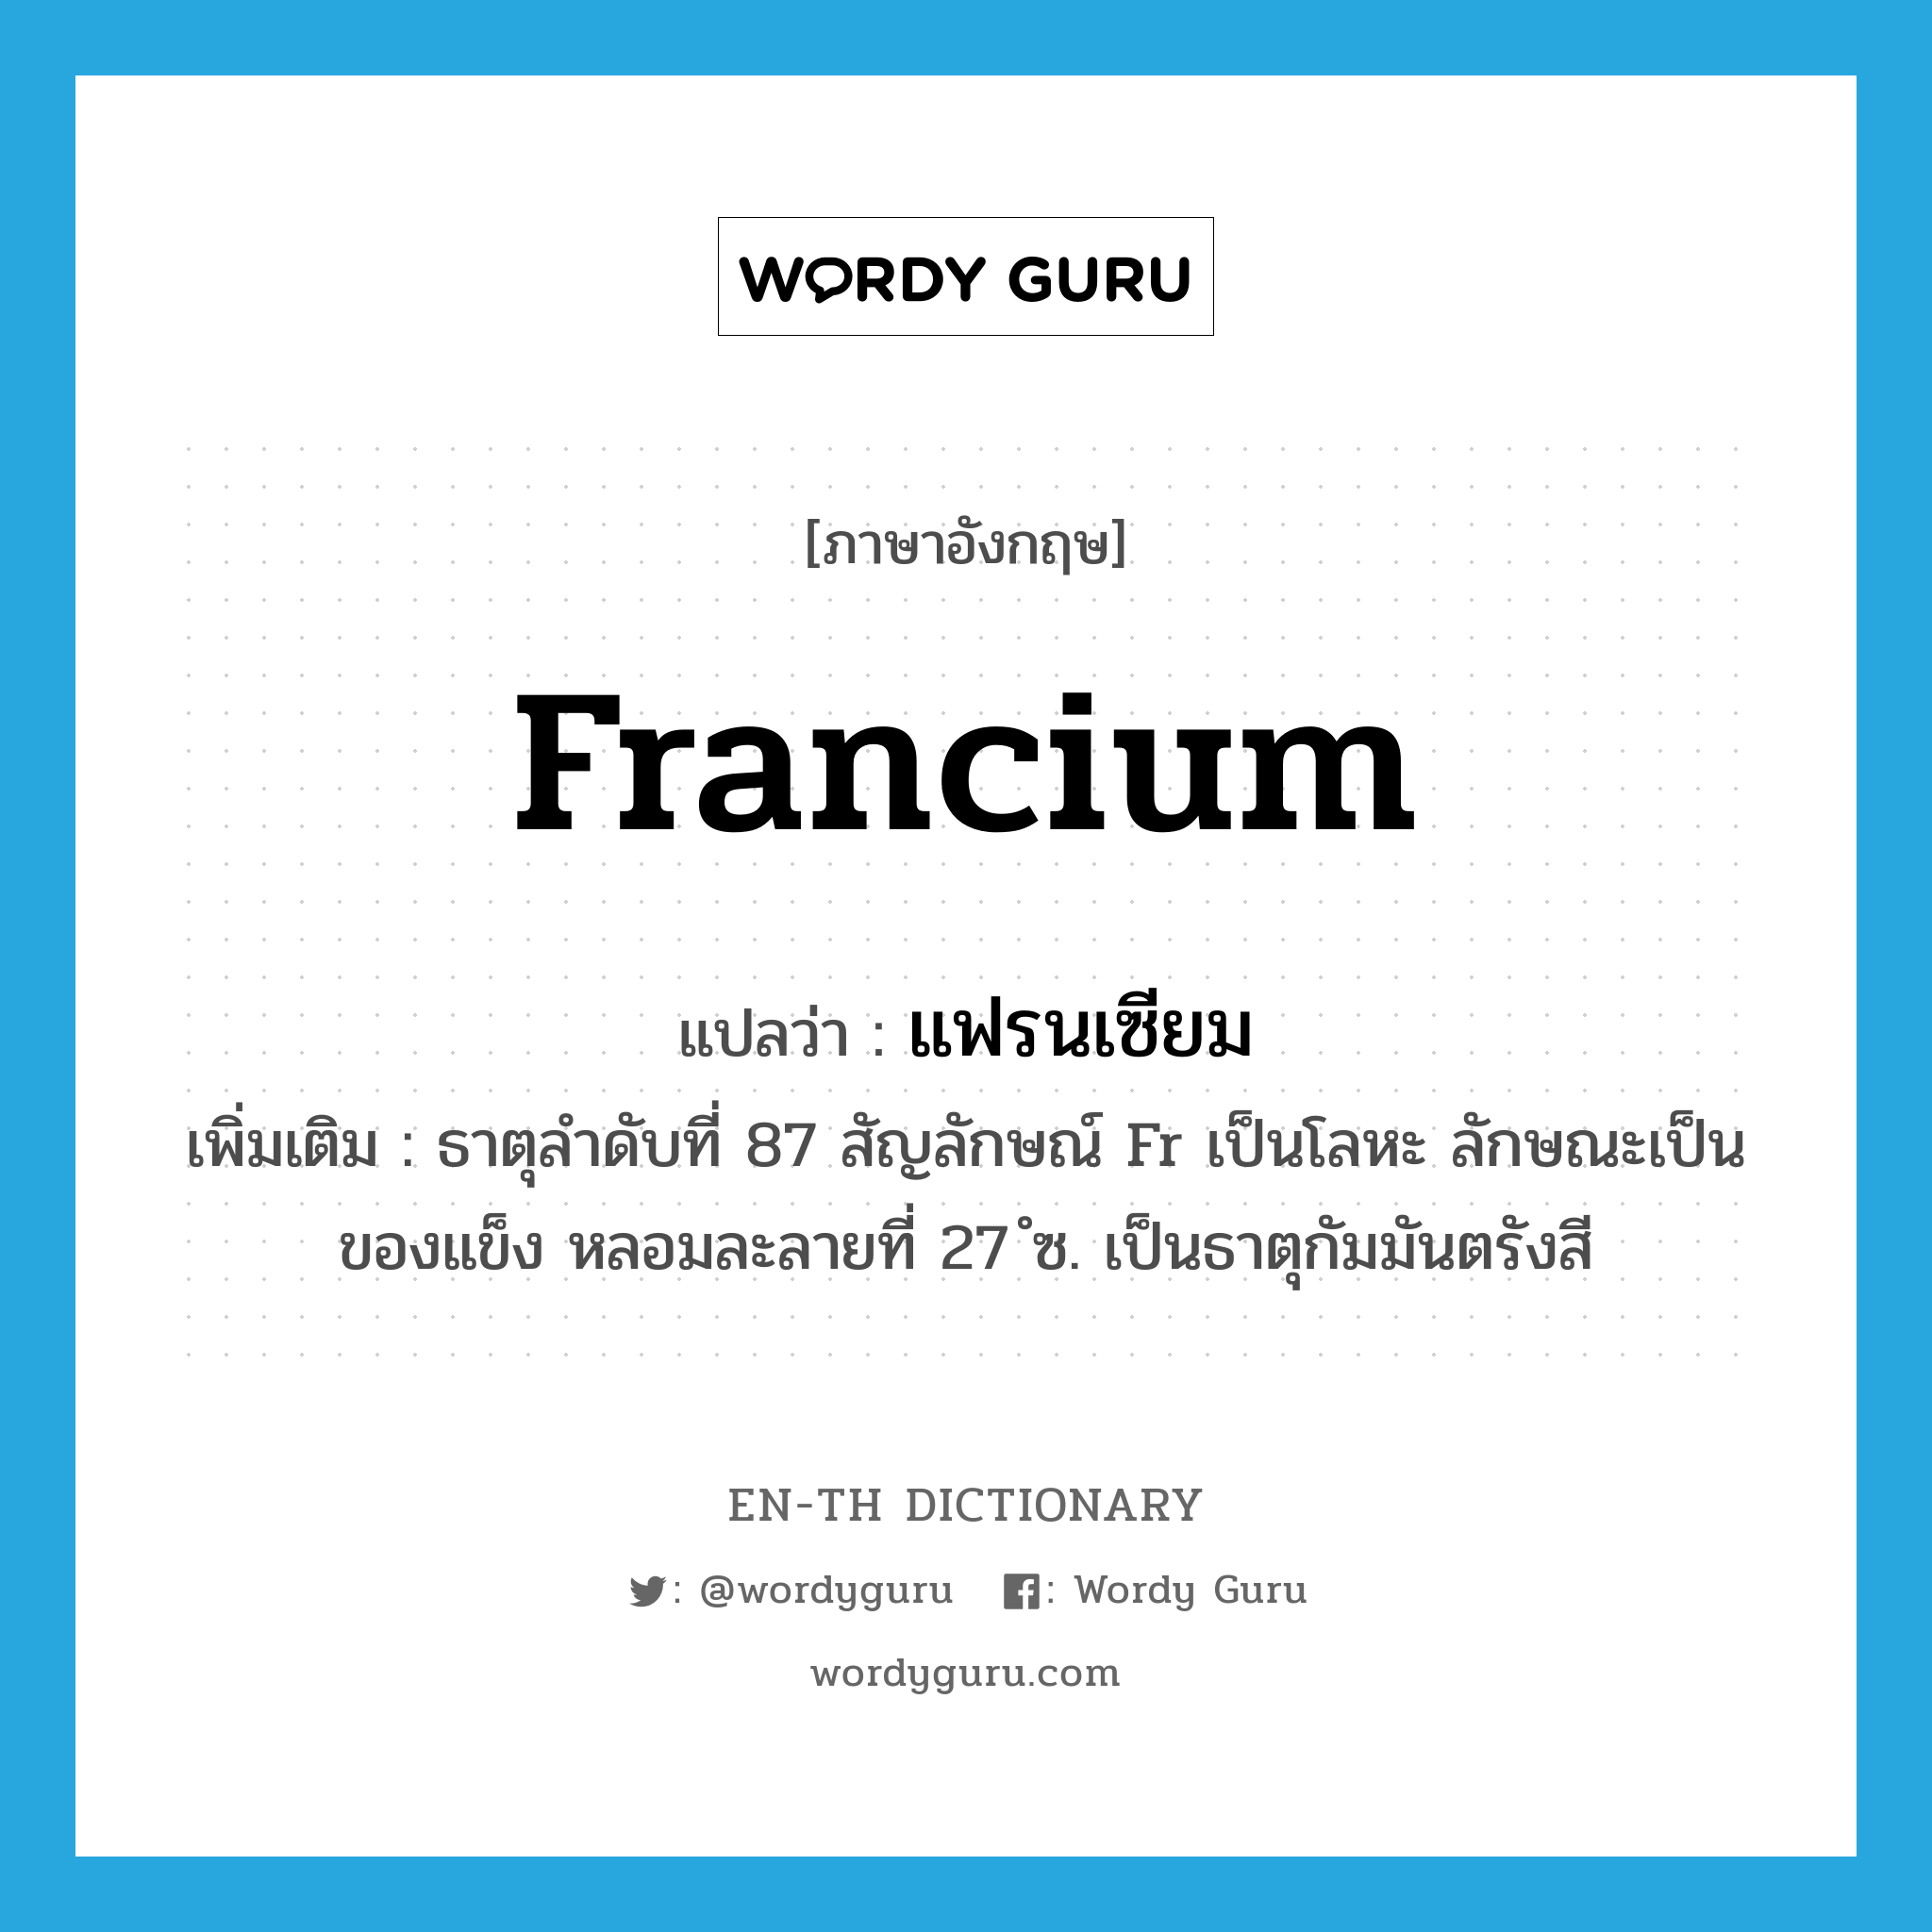 แฟรนเซียม ภาษาอังกฤษ?, คำศัพท์ภาษาอังกฤษ แฟรนเซียม แปลว่า francium ประเภท N เพิ่มเติม ธาตุลำดับที่ 87 สัญลักษณ์ Fr เป็นโลหะ ลักษณะเป็นของแข็ง หลอมละลายที่ 27 ํซ. เป็นธาตุกัมมันตรังสี หมวด N